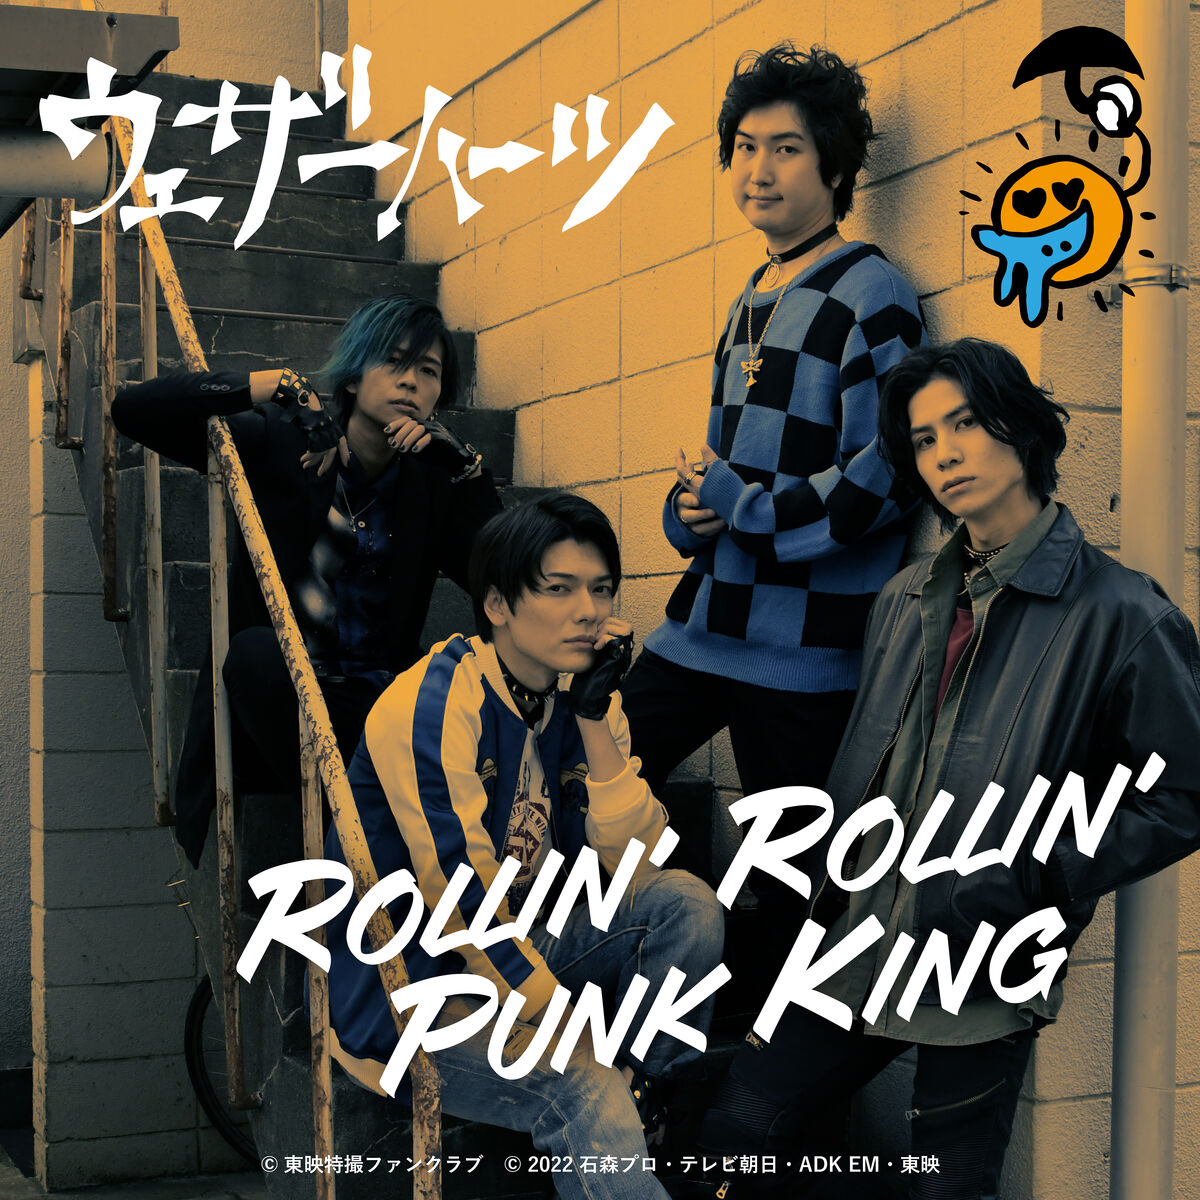 ROLLIN' ROLLIN' PUNK KING | Kamen Rider Wiki | Fandom